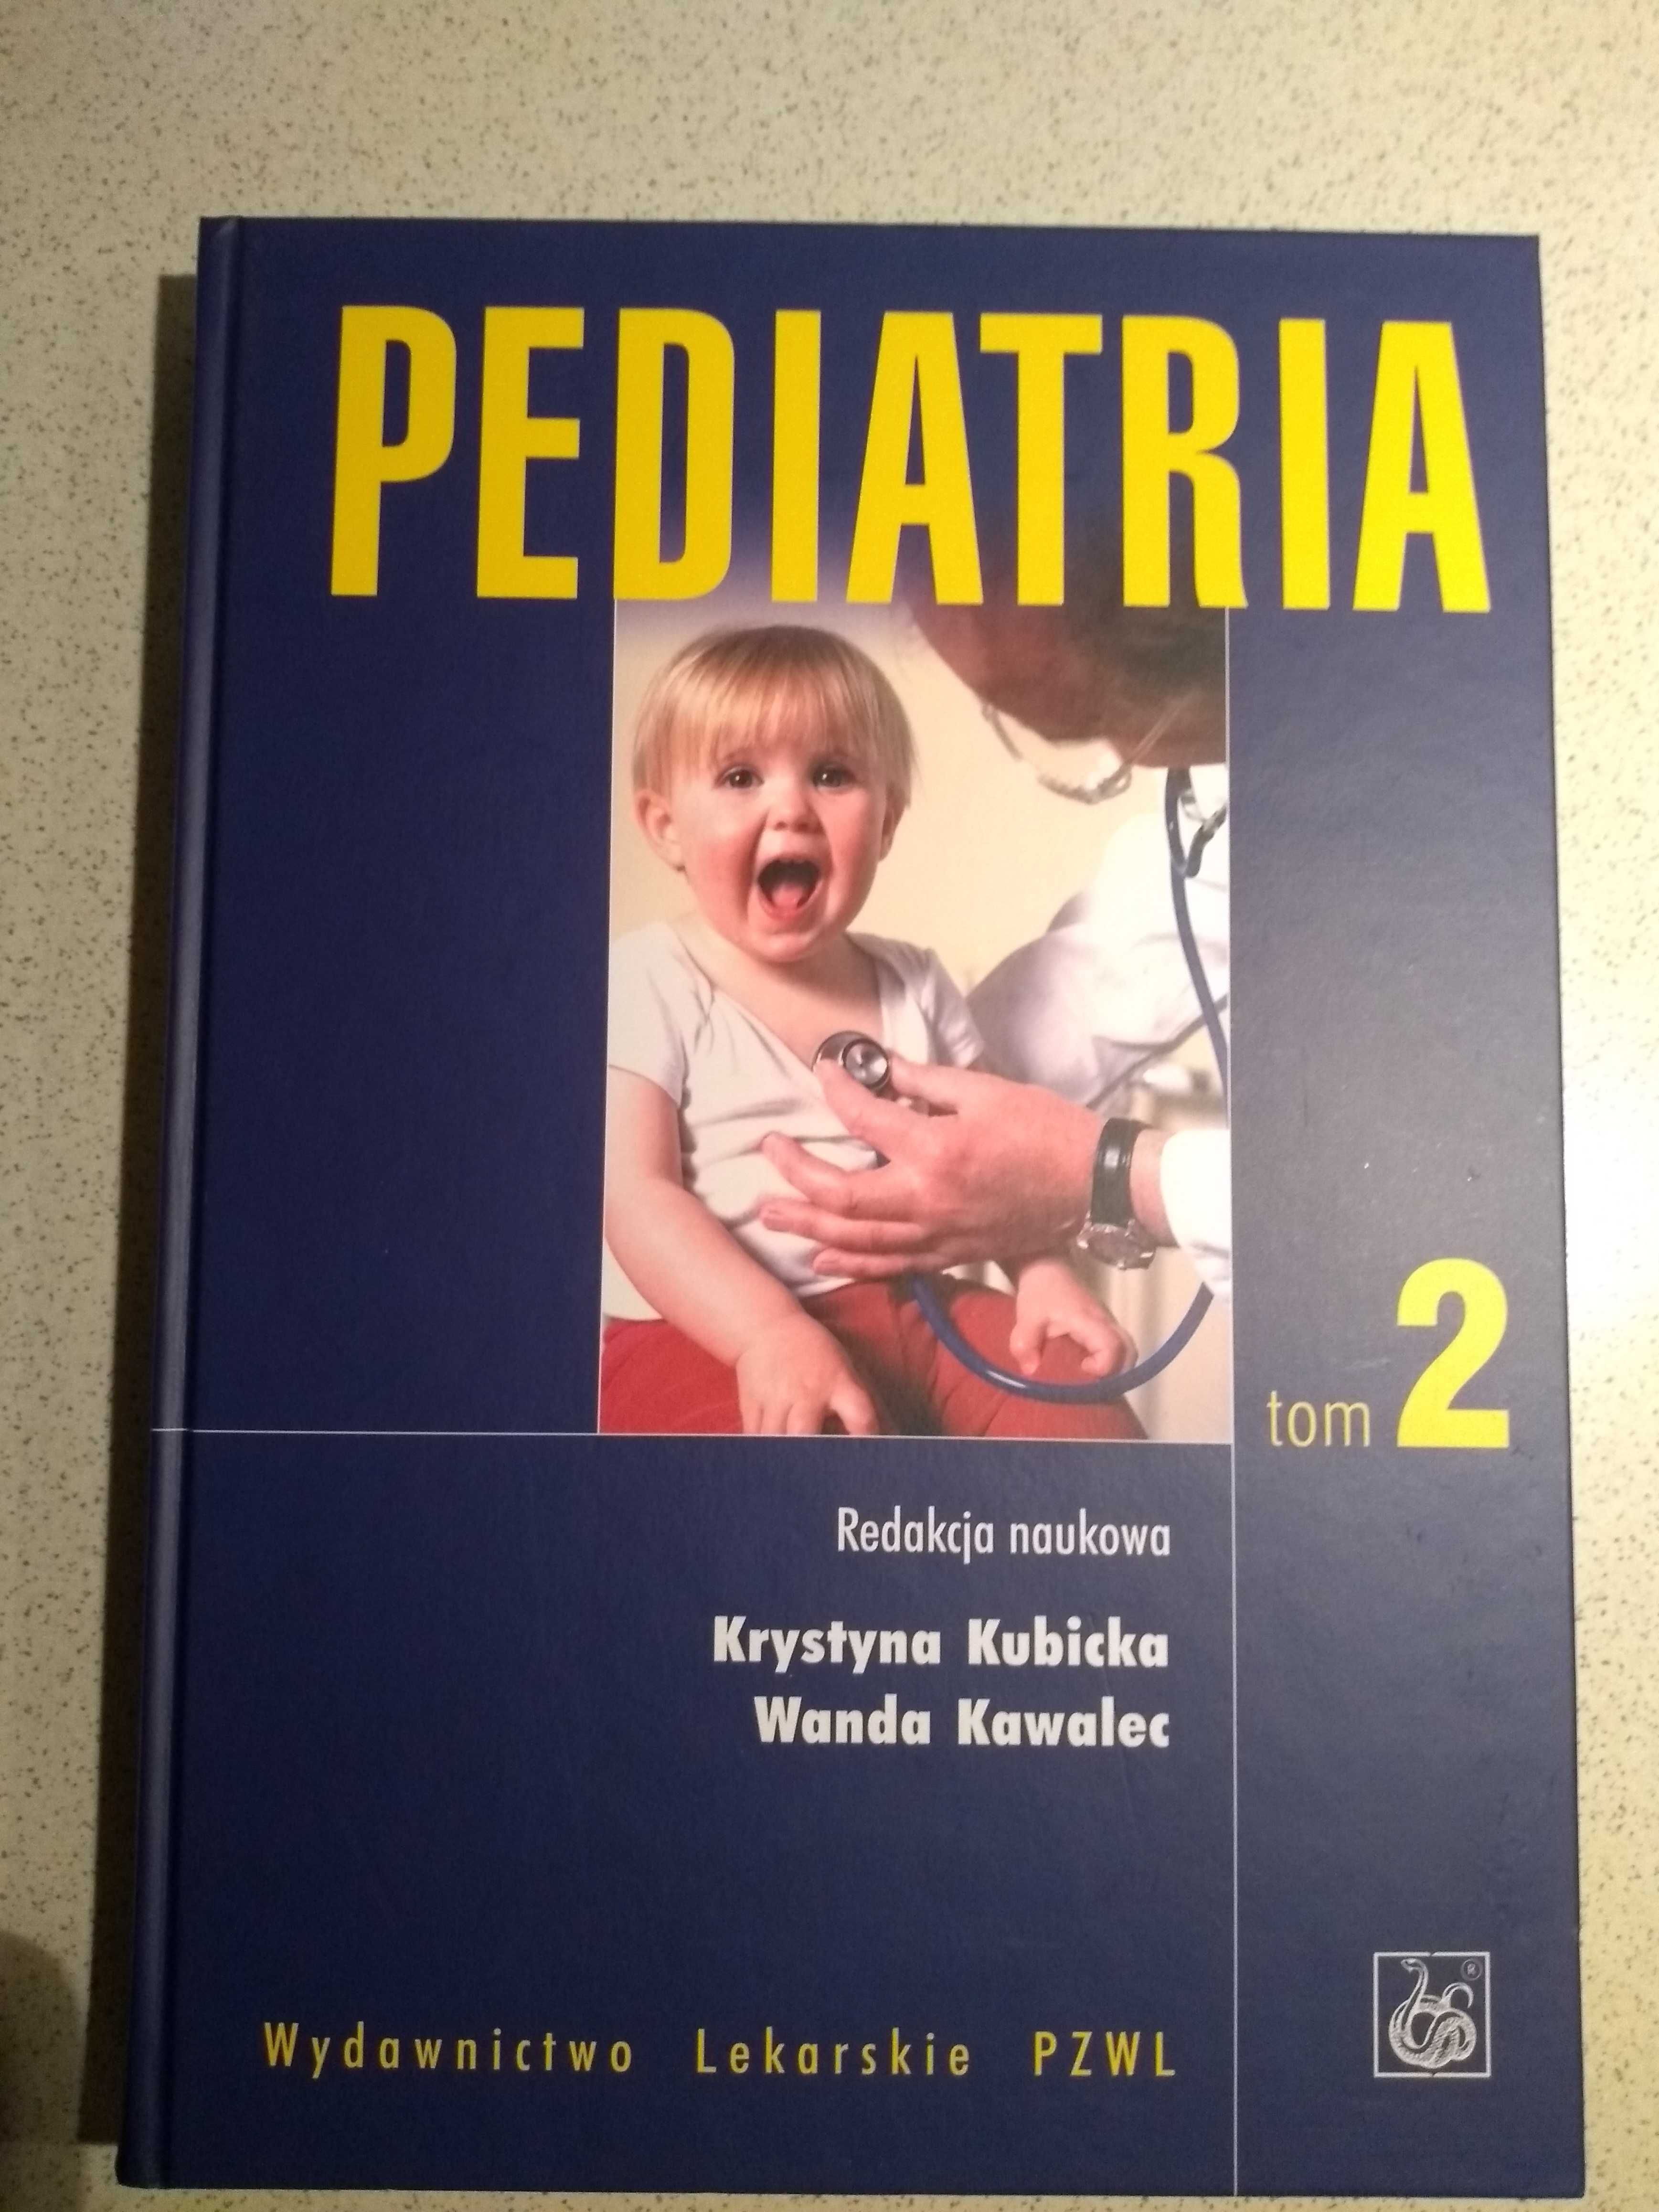 Pediatria tom 2 Kubicka Kawalec PZWL